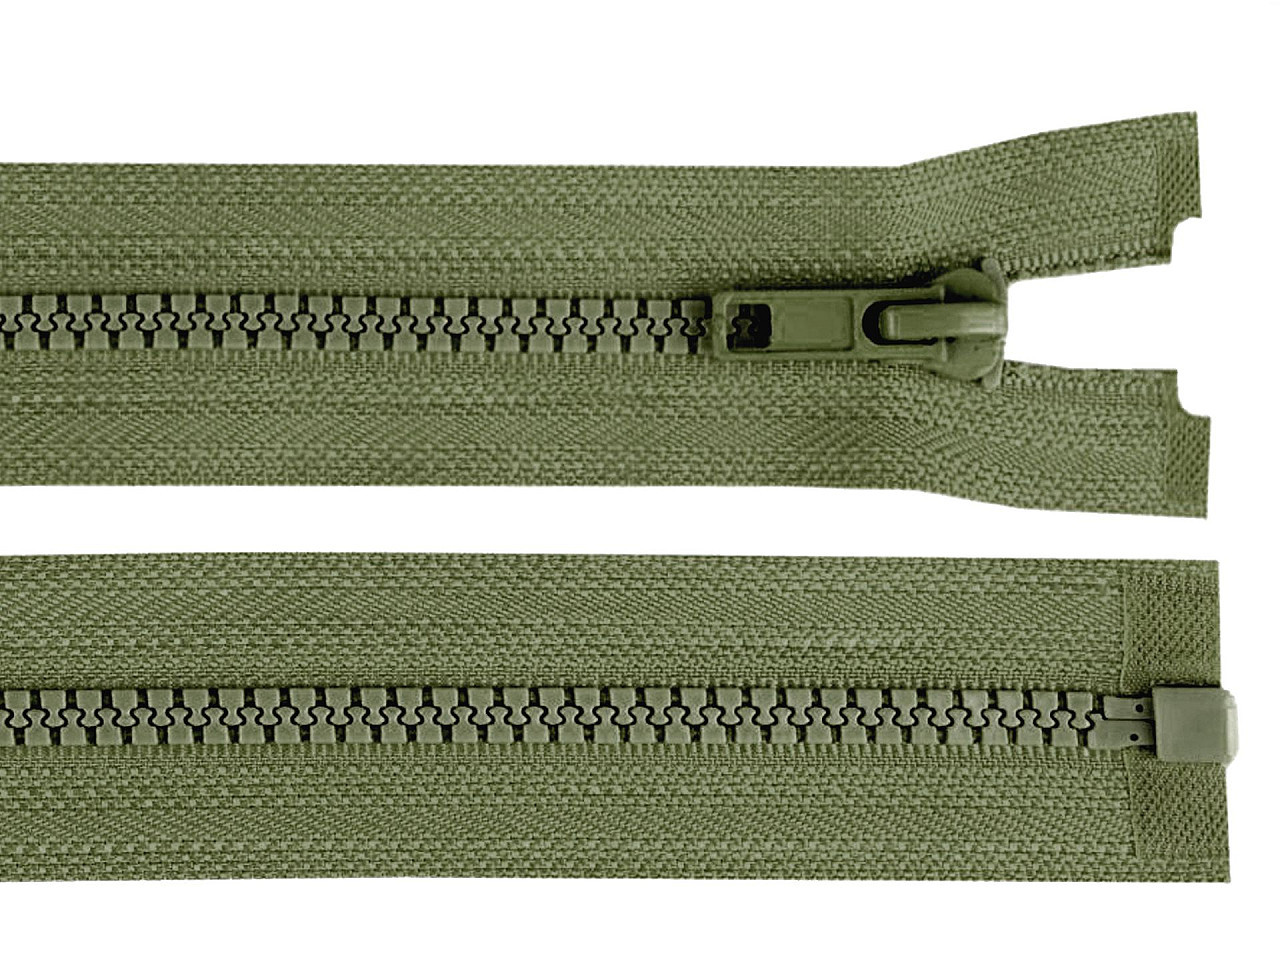 Kostěný zip šíře 5 mm délka 45 cm bundový, barva 327 zelená